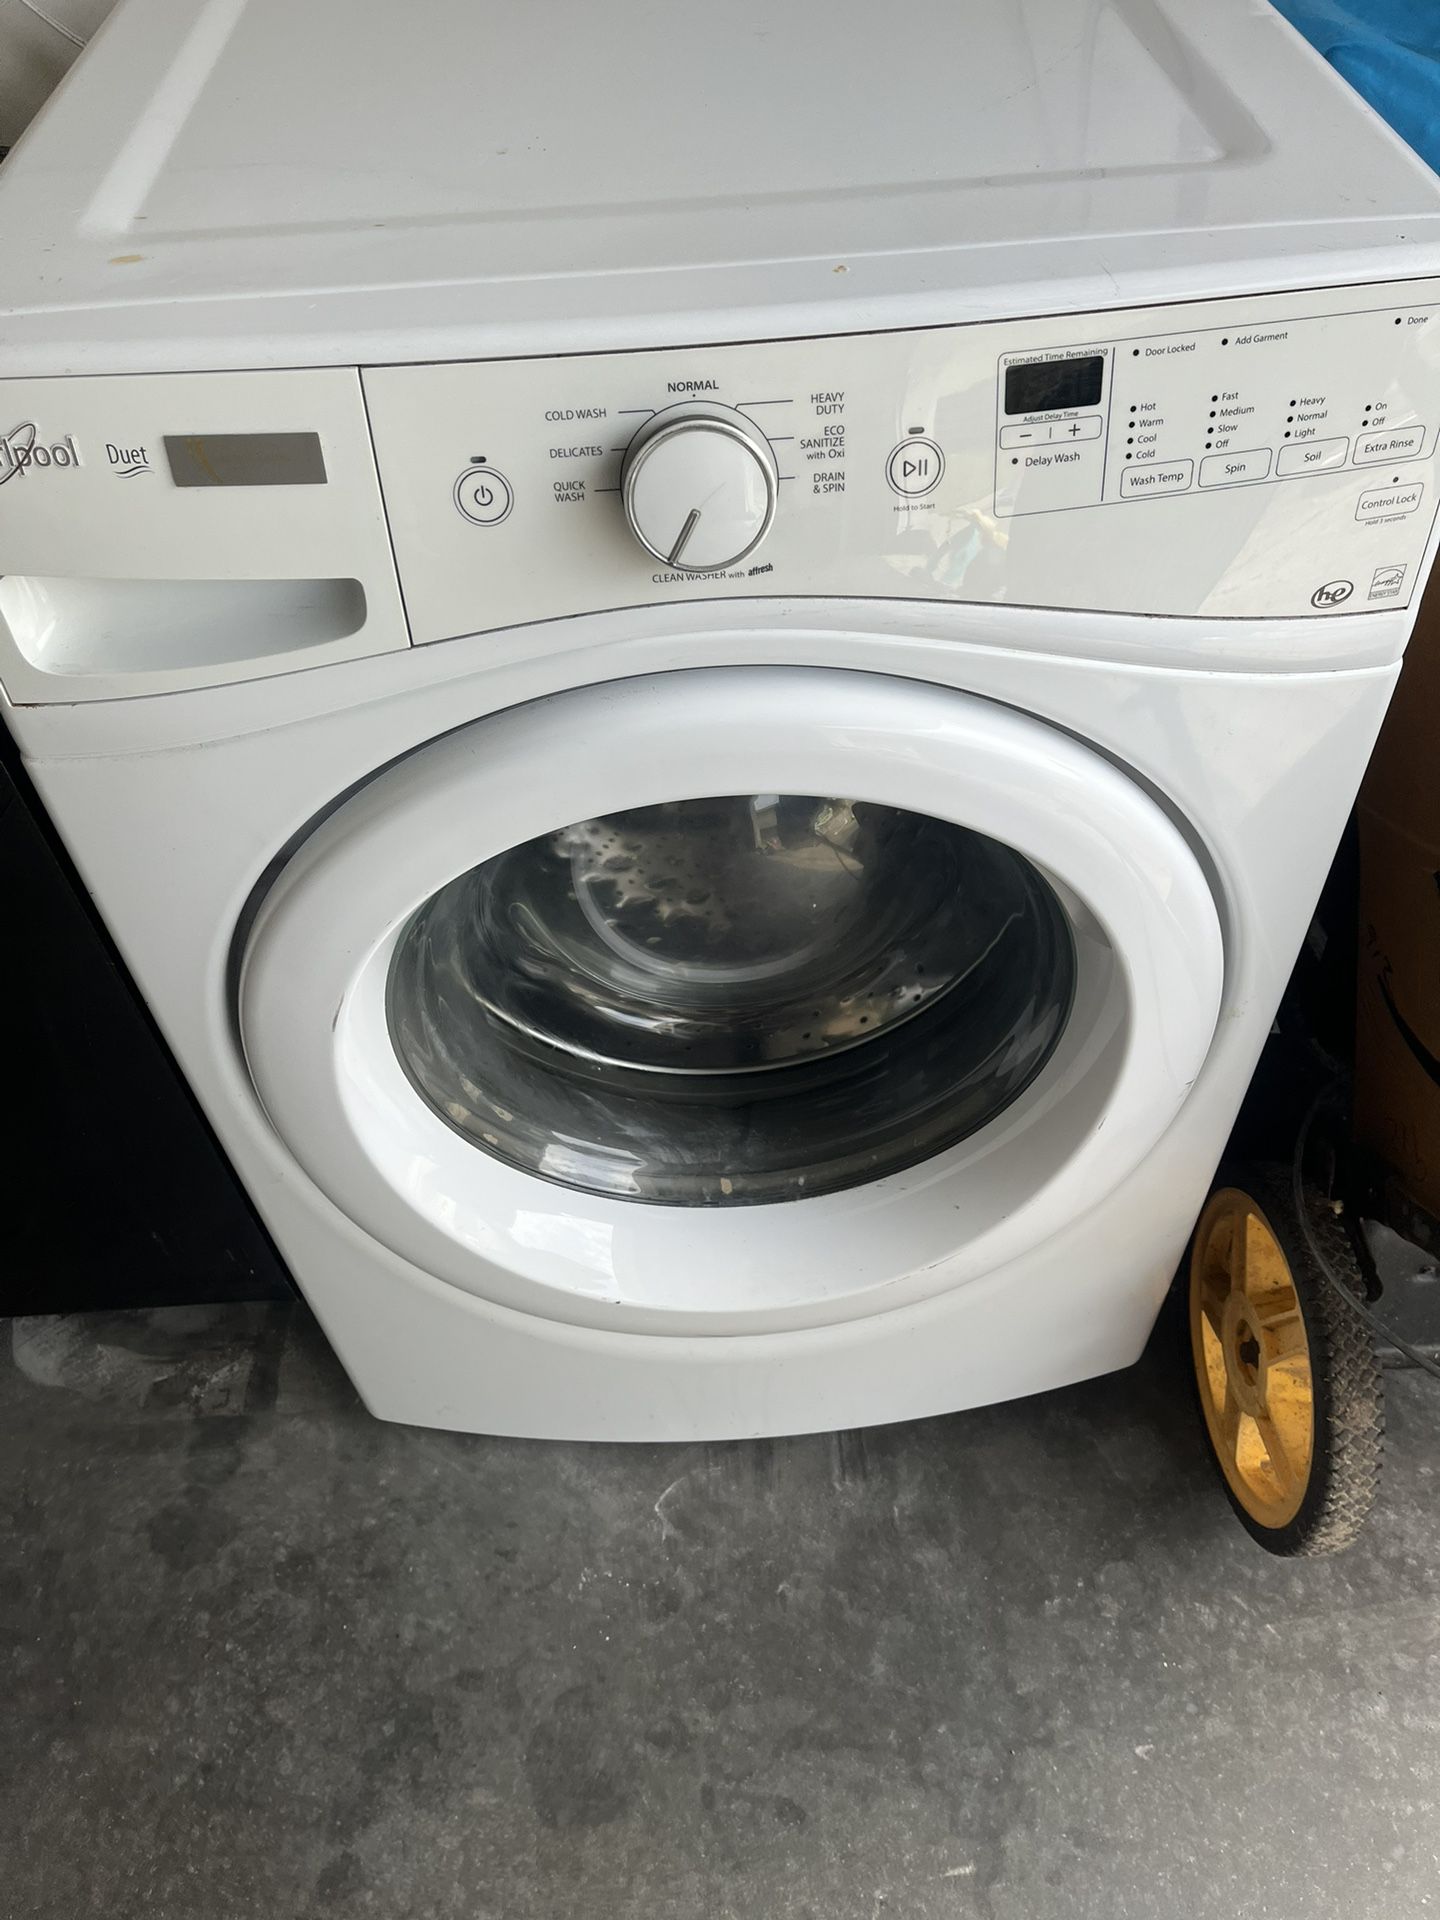  Whirlpool Washing Machine